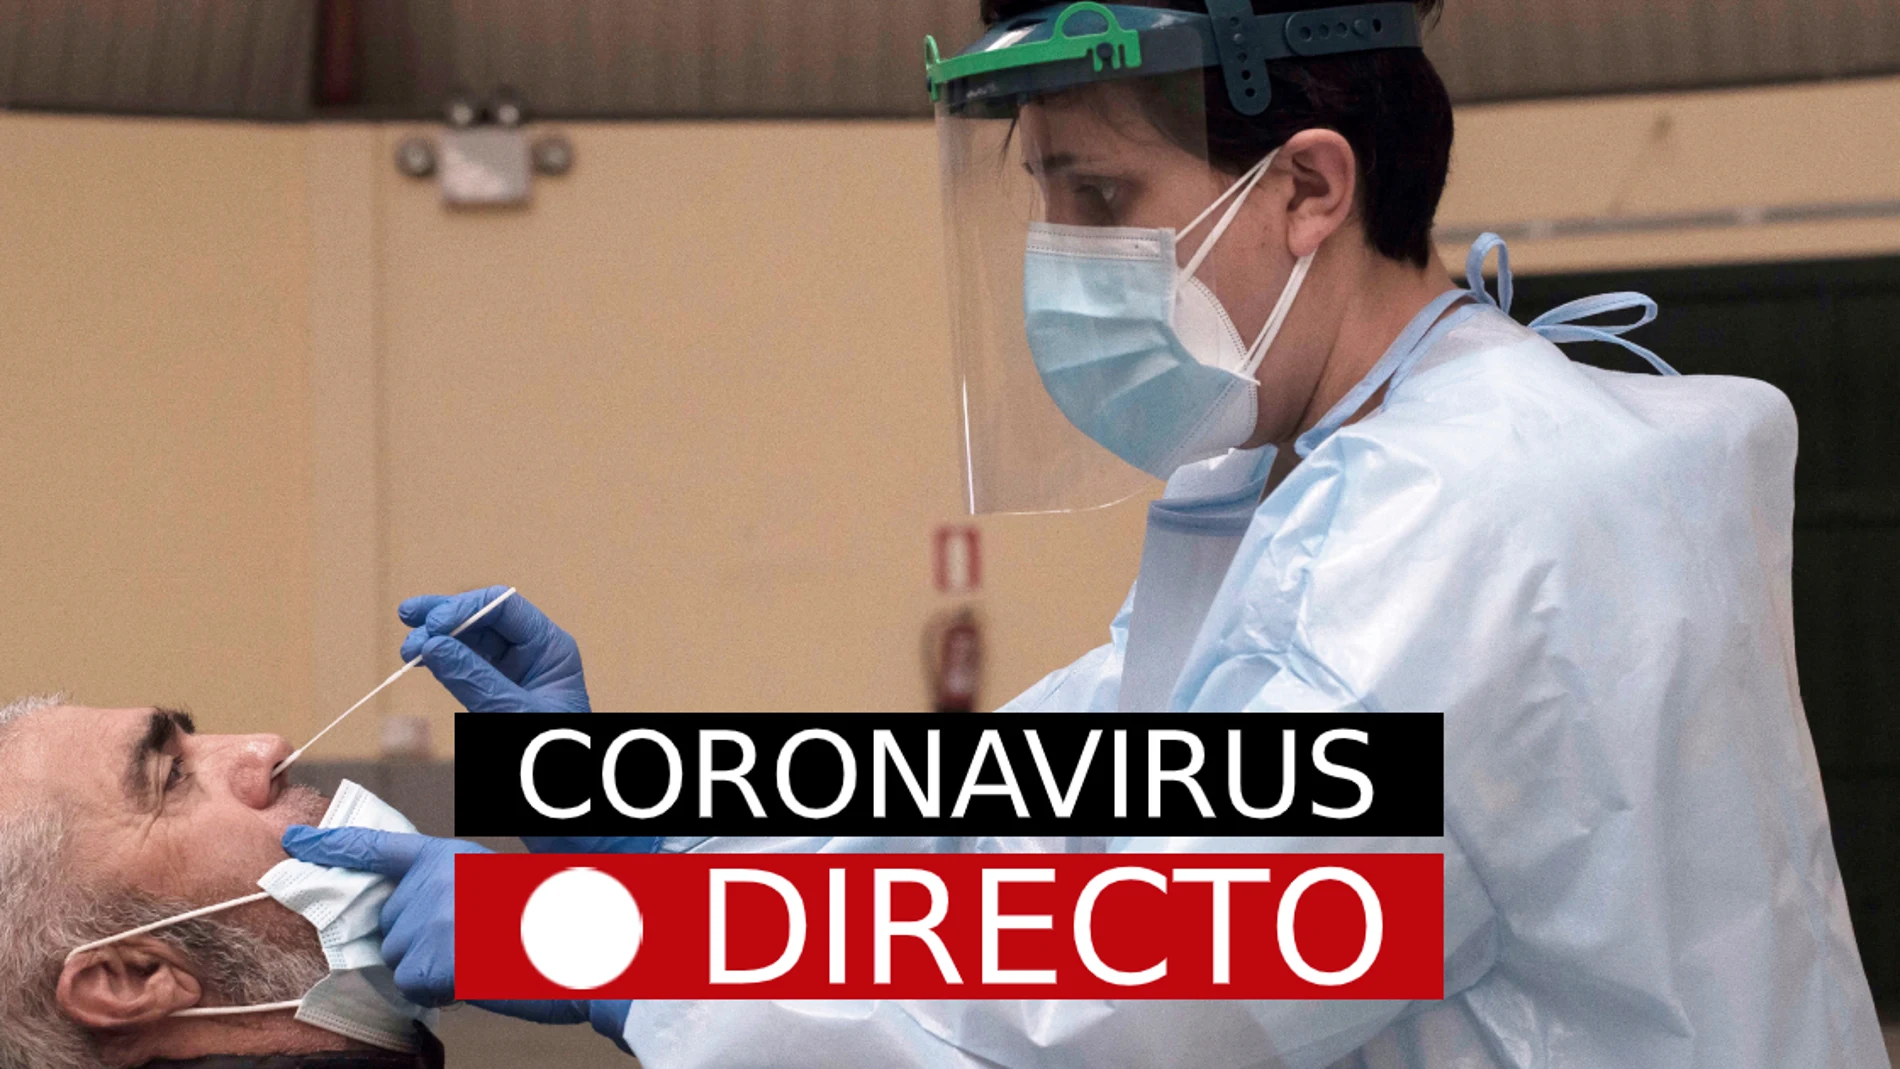 Última hora: Restricciones, medidas por coronavirus en España y vacuna hoy | COVID-19 en Madrid y resto de CCAA